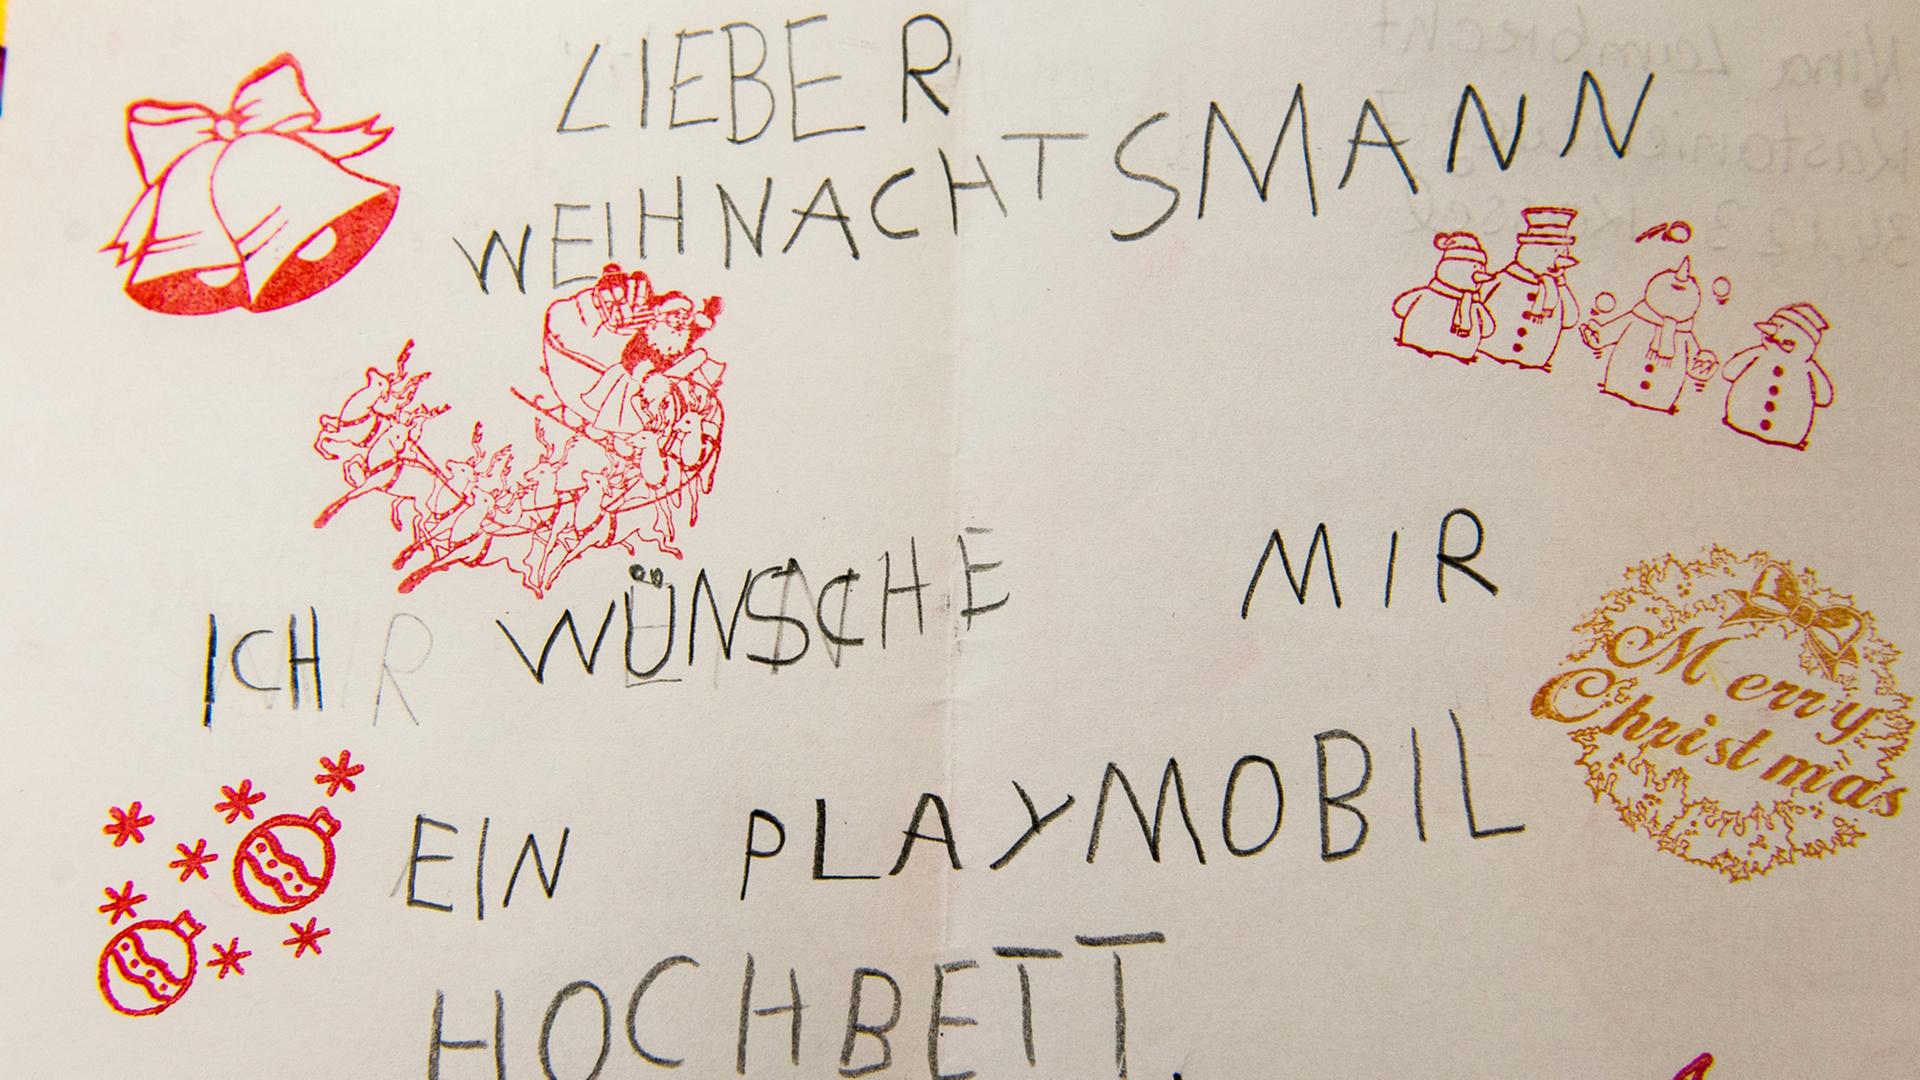 "Lieber Weihnachtsmann ich wünsche mir ein Playmobil Hochbett", steht auf einem Wunschzettel im Weihnachtspostamt im Hildesheimer Stadtteil Himmelsthür (Niedersachsen).